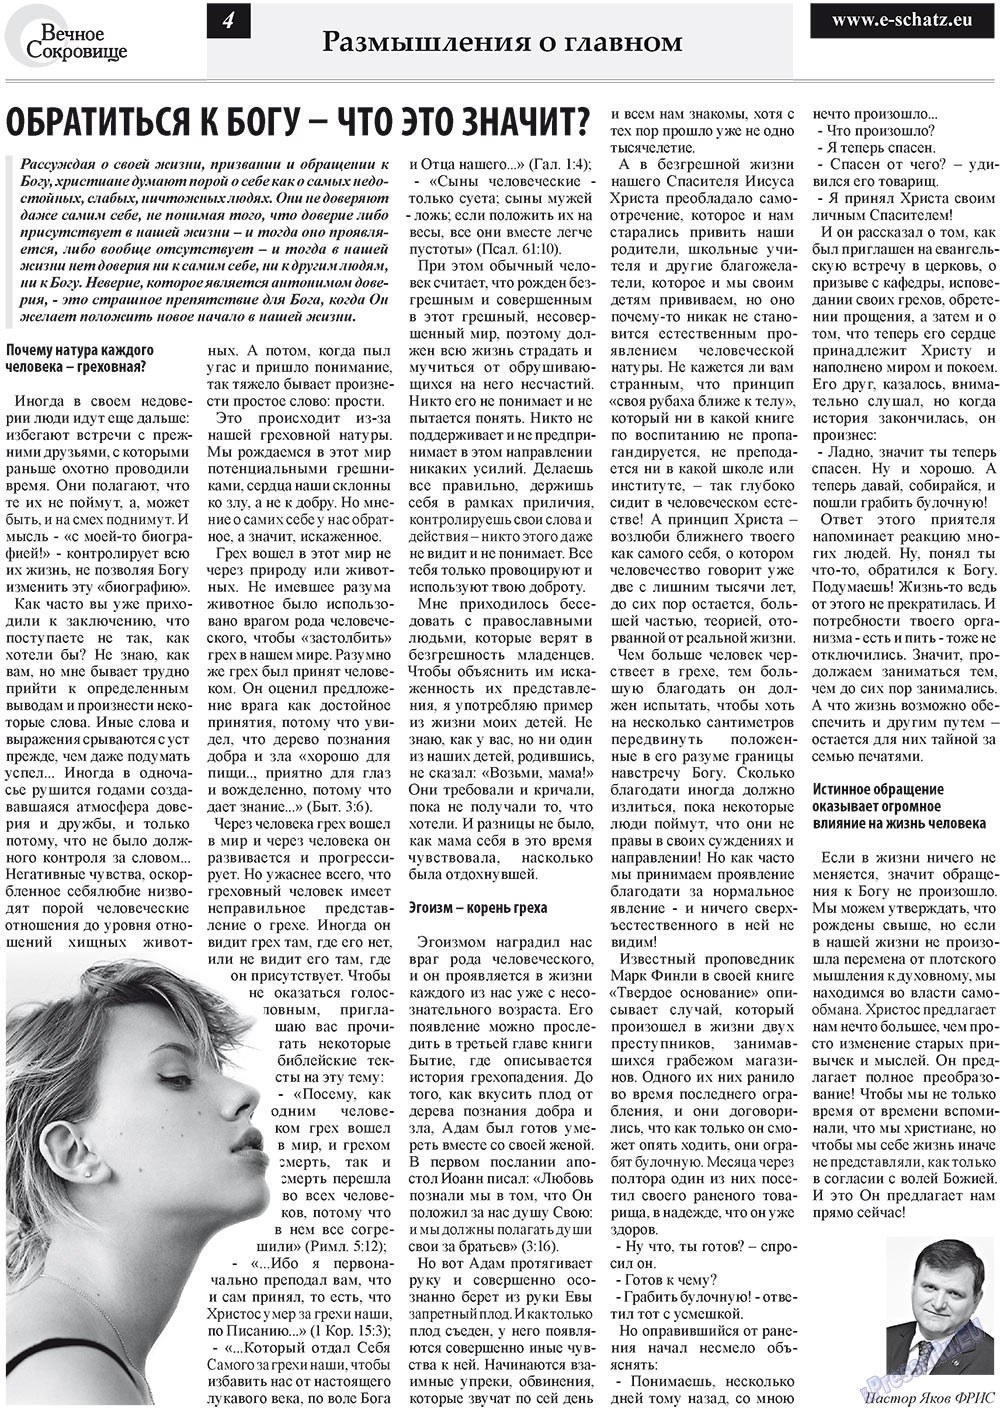 Вечное сокровище, газета. 2011 №4 стр.4